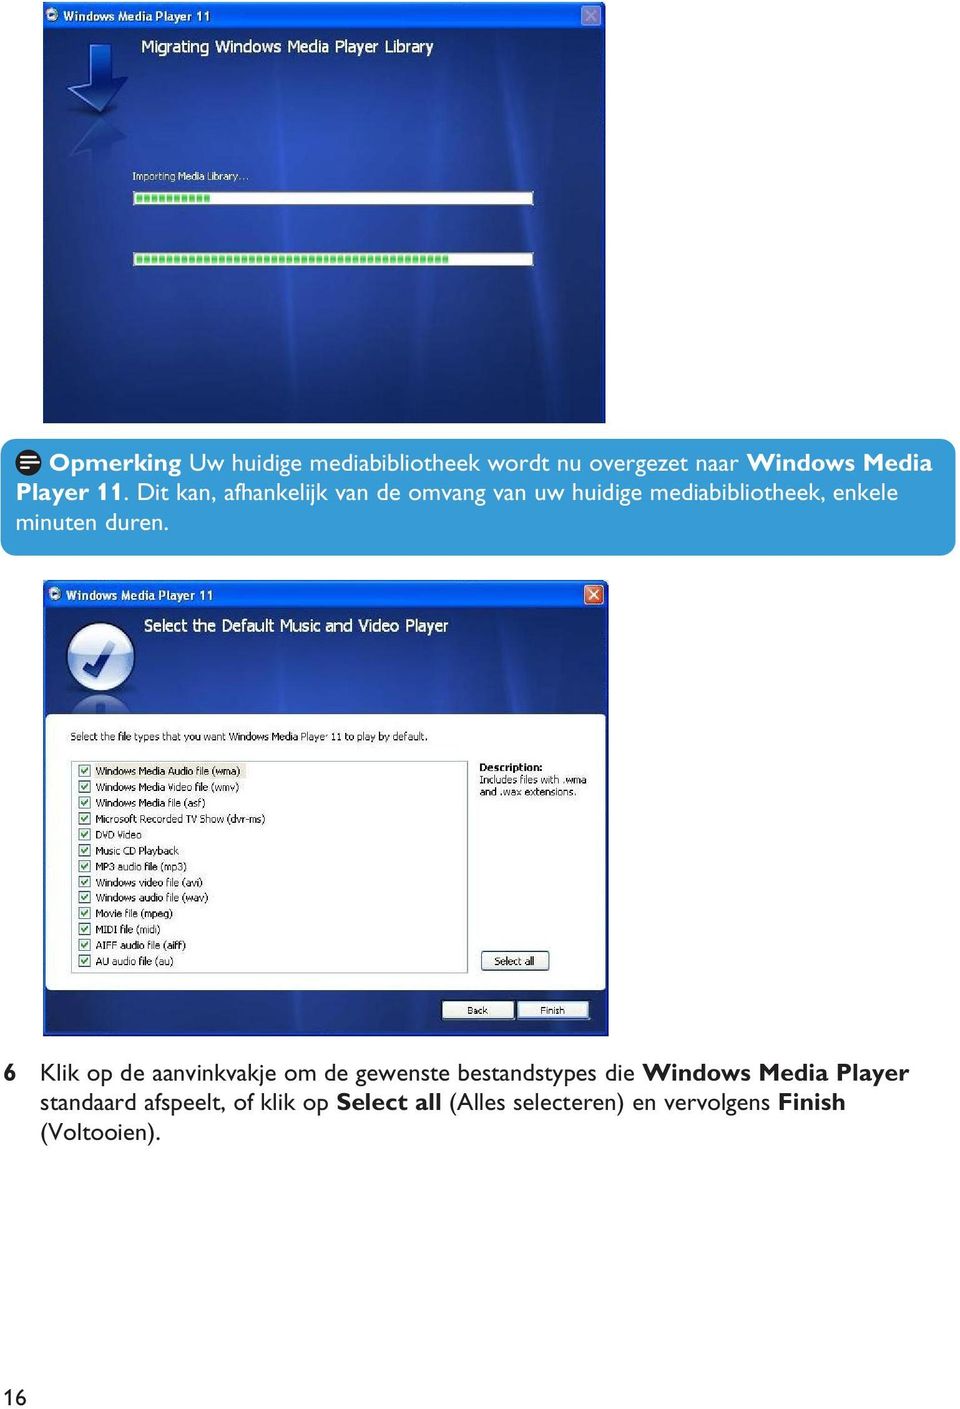 6 Klik op de aanvinkvakje om de gewenste bestandstypes die Windows Media Player